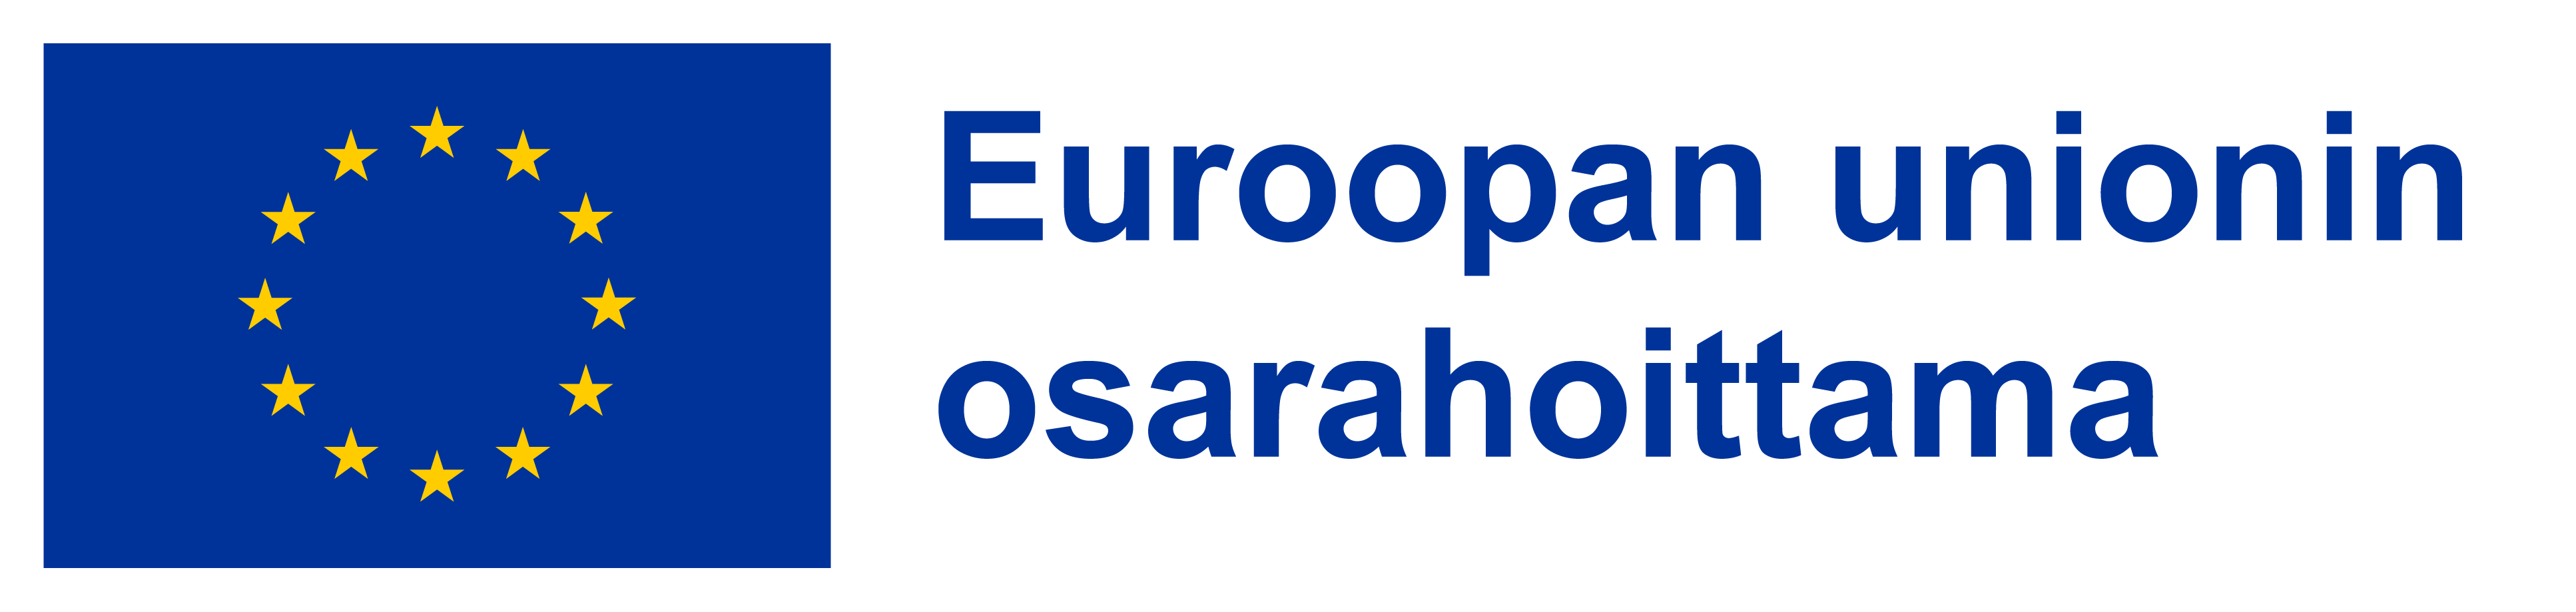 EU:n logo ja teksti: Euroopan unionin osarahoittama.